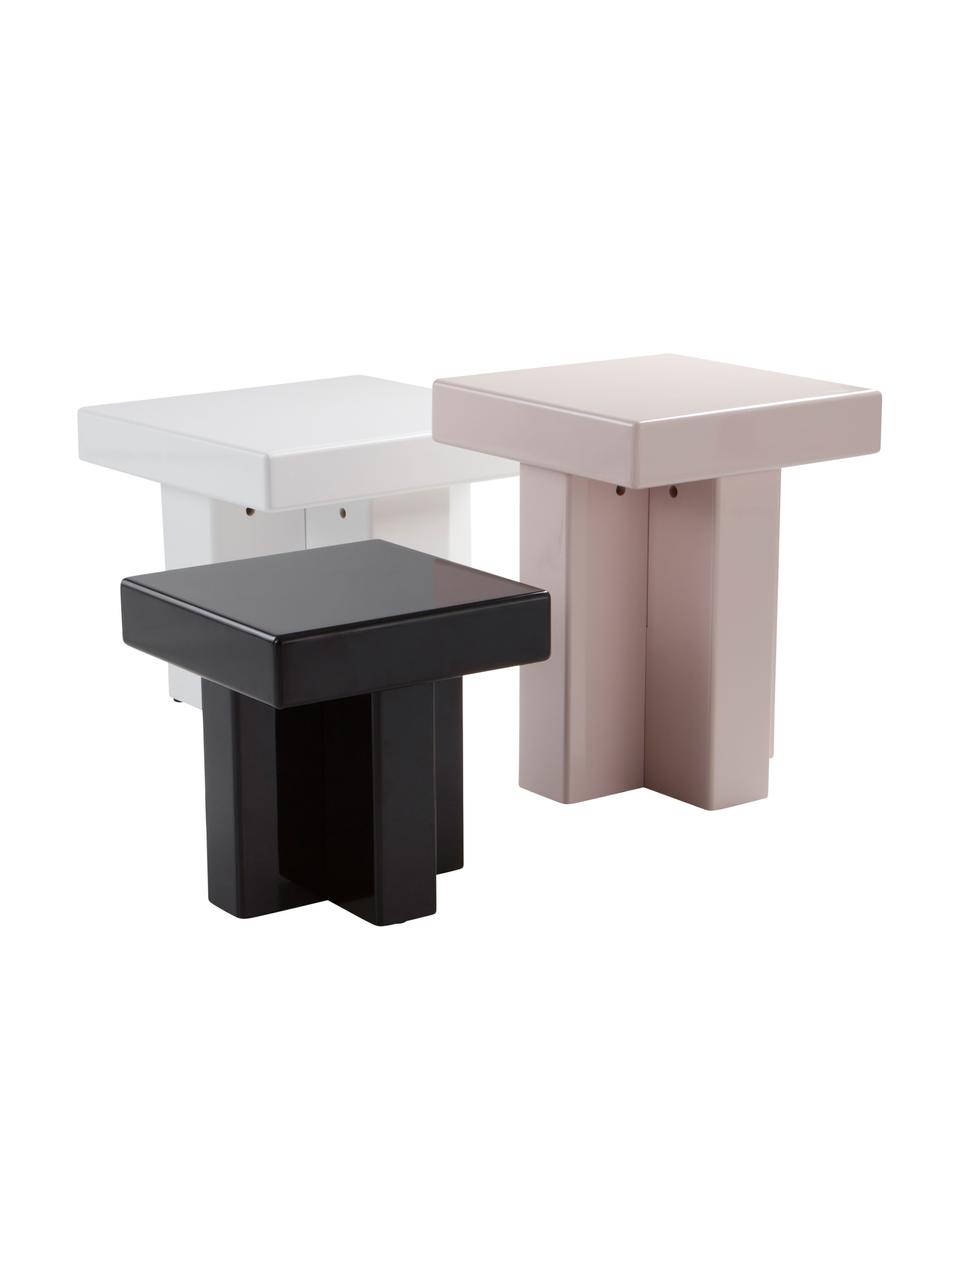 Odkládací stolek Crozz, Lakovaná MDF deska (dřevovláknitá deska střední hustoty), Růžová, Š 50 cm, V 48 cm